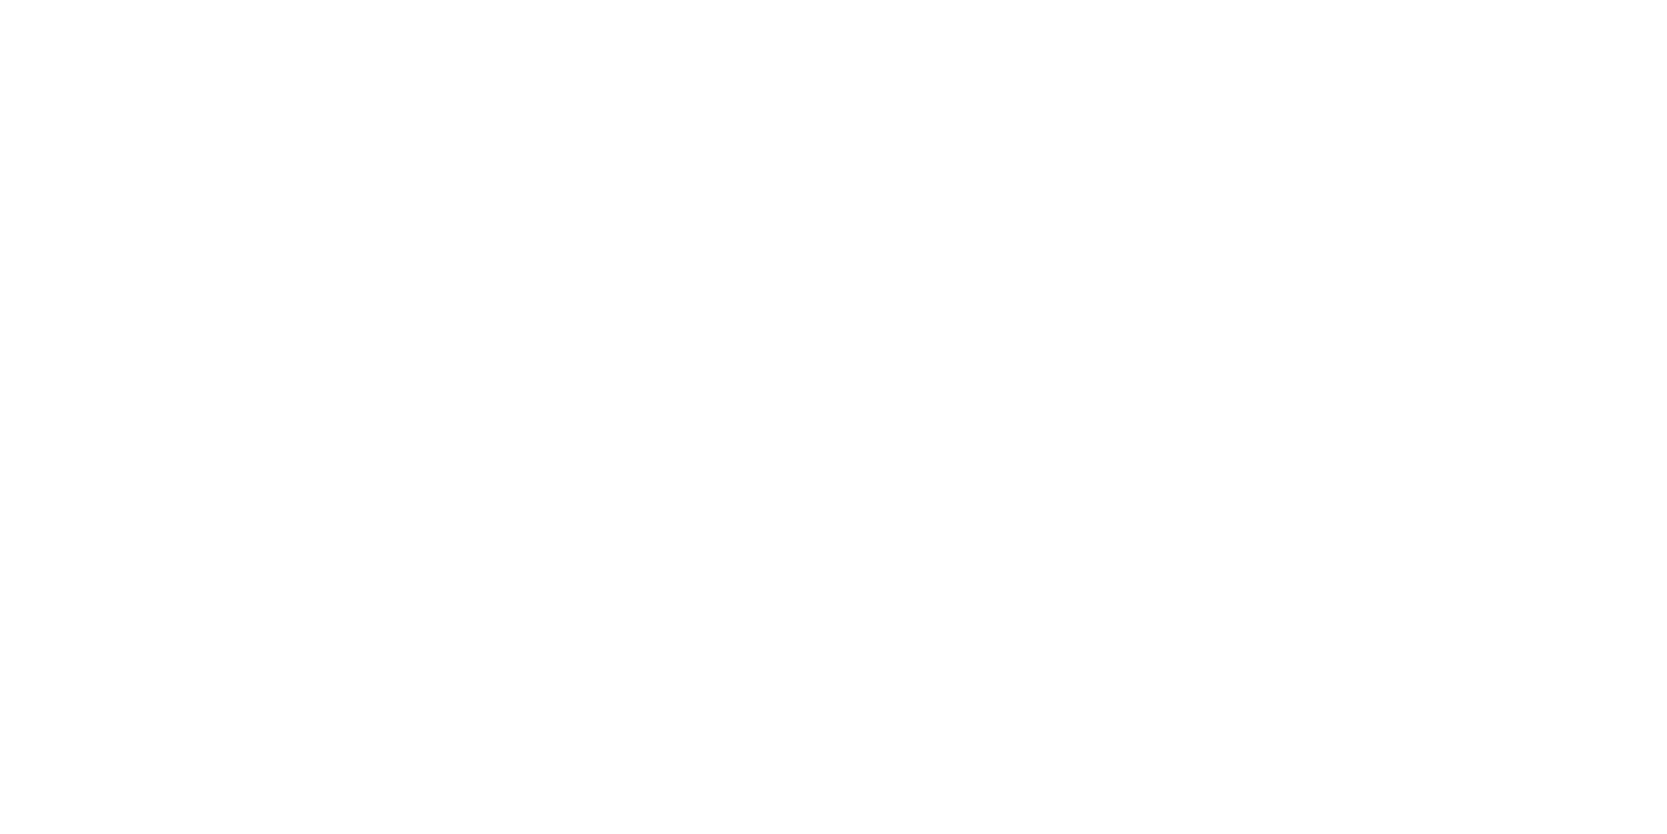 2020 New Orleans Film Festival